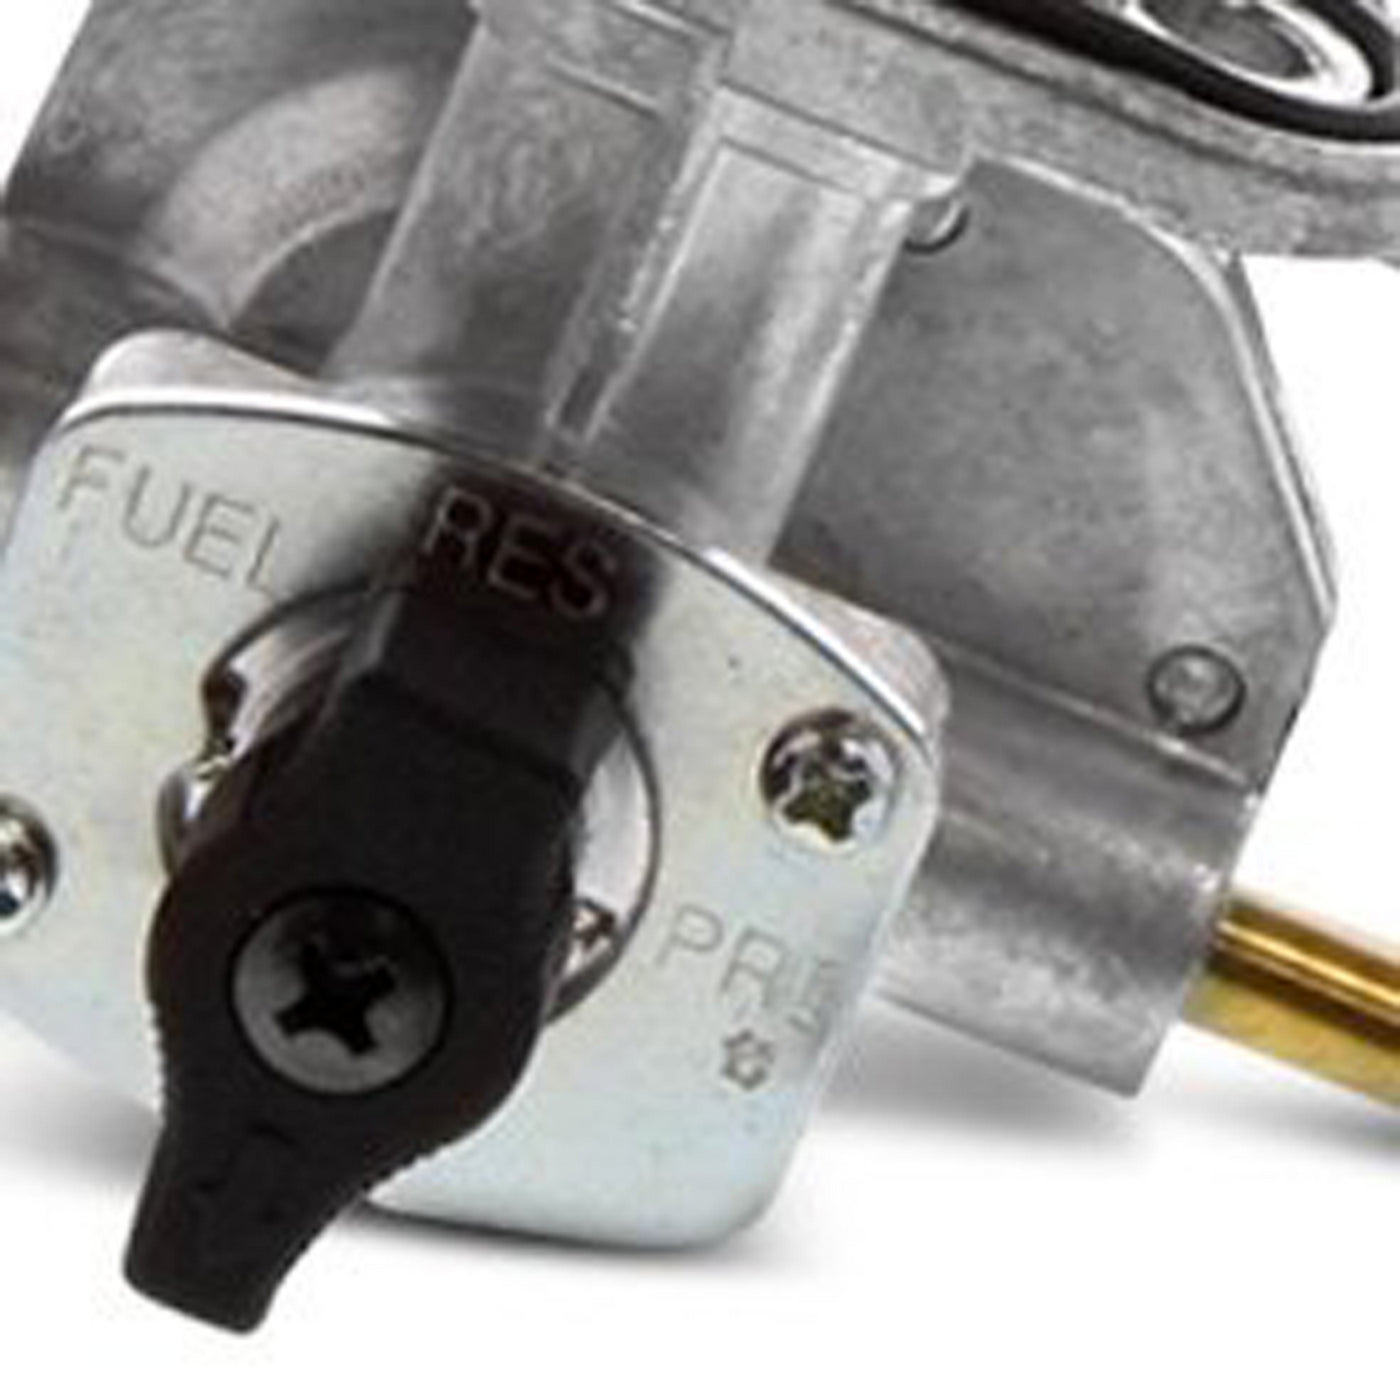 Fuel Star FS101-0107 Fuel Valve Kit #FS101-0107